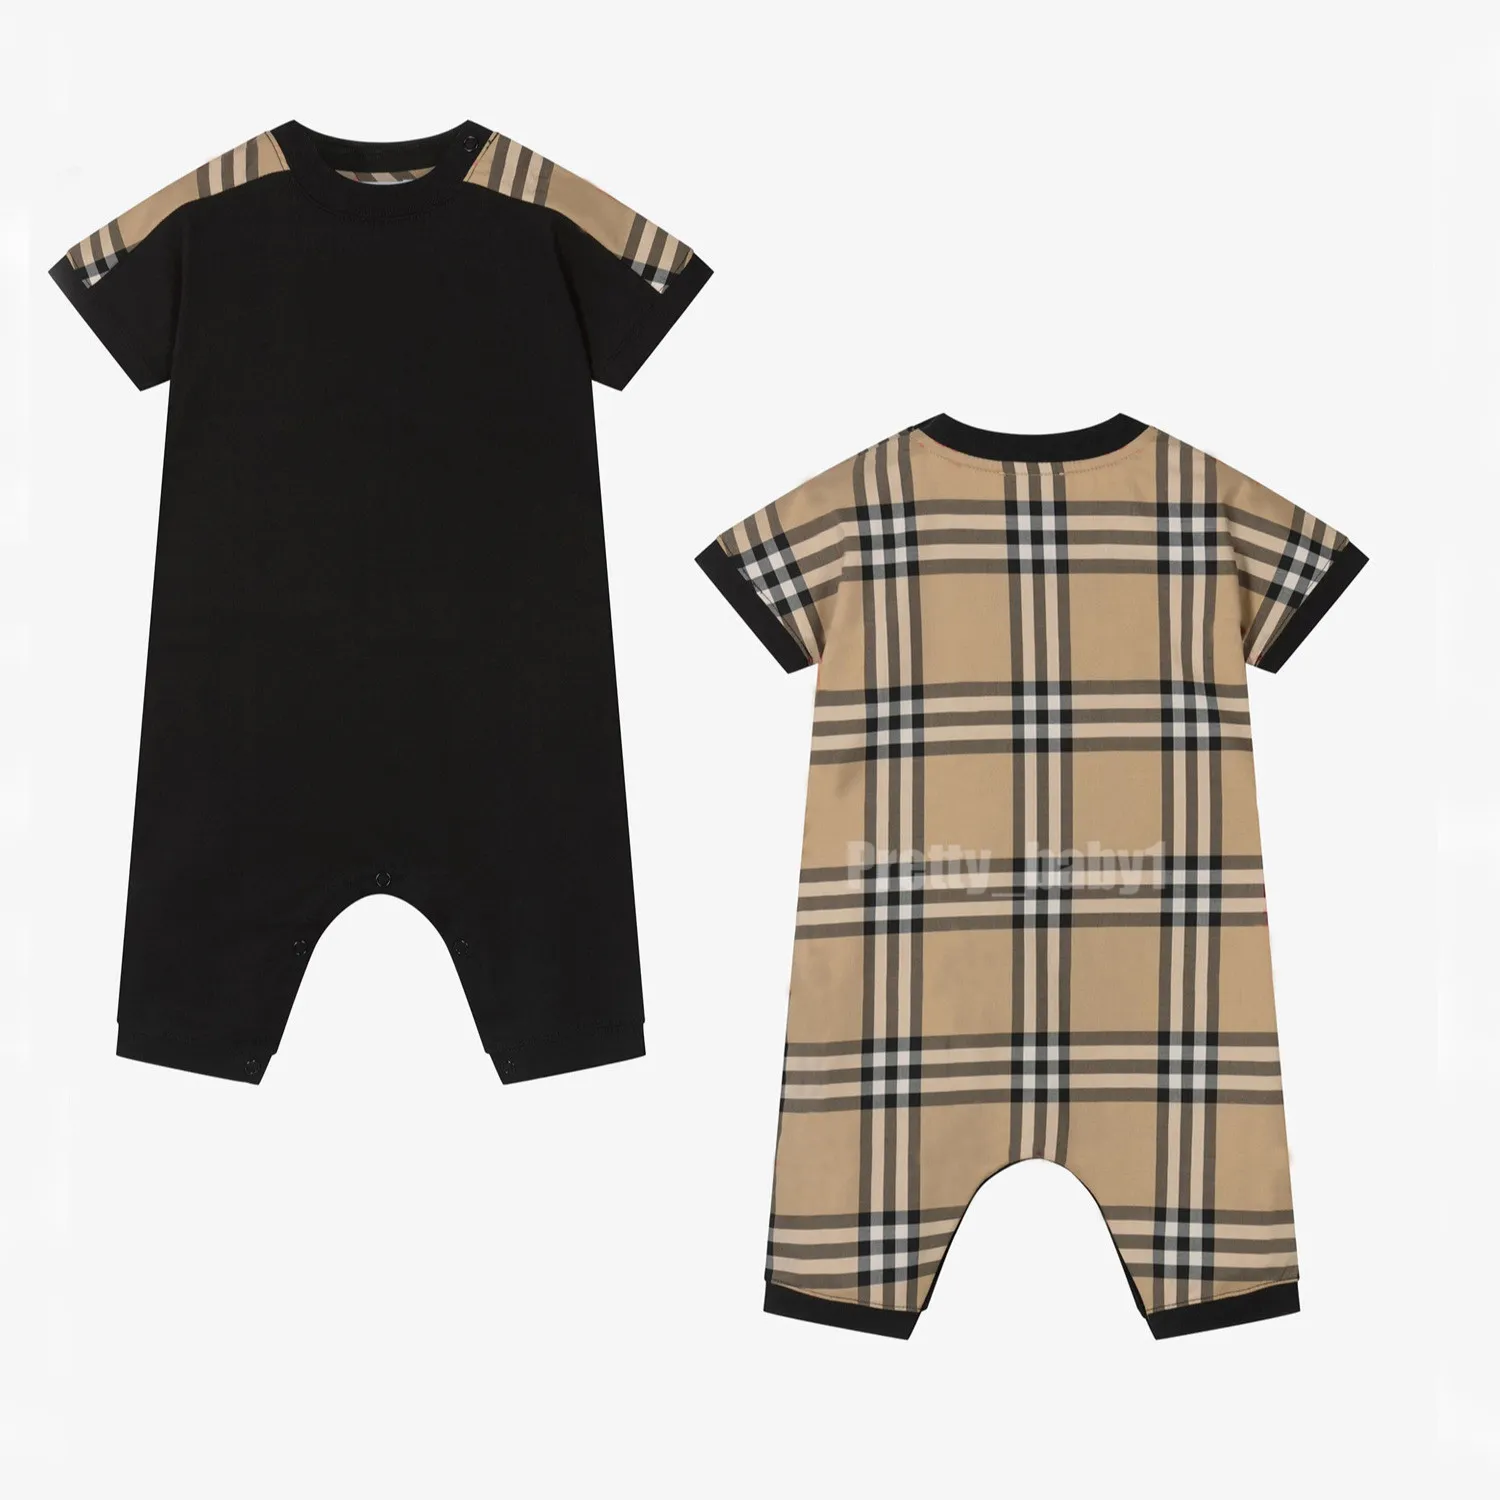 NOUVEAU NOUVEAU Été bébé fille rober Coton Soft Soft Sleeve Brand bébé Jumps Casual Casual Kids Vêtements